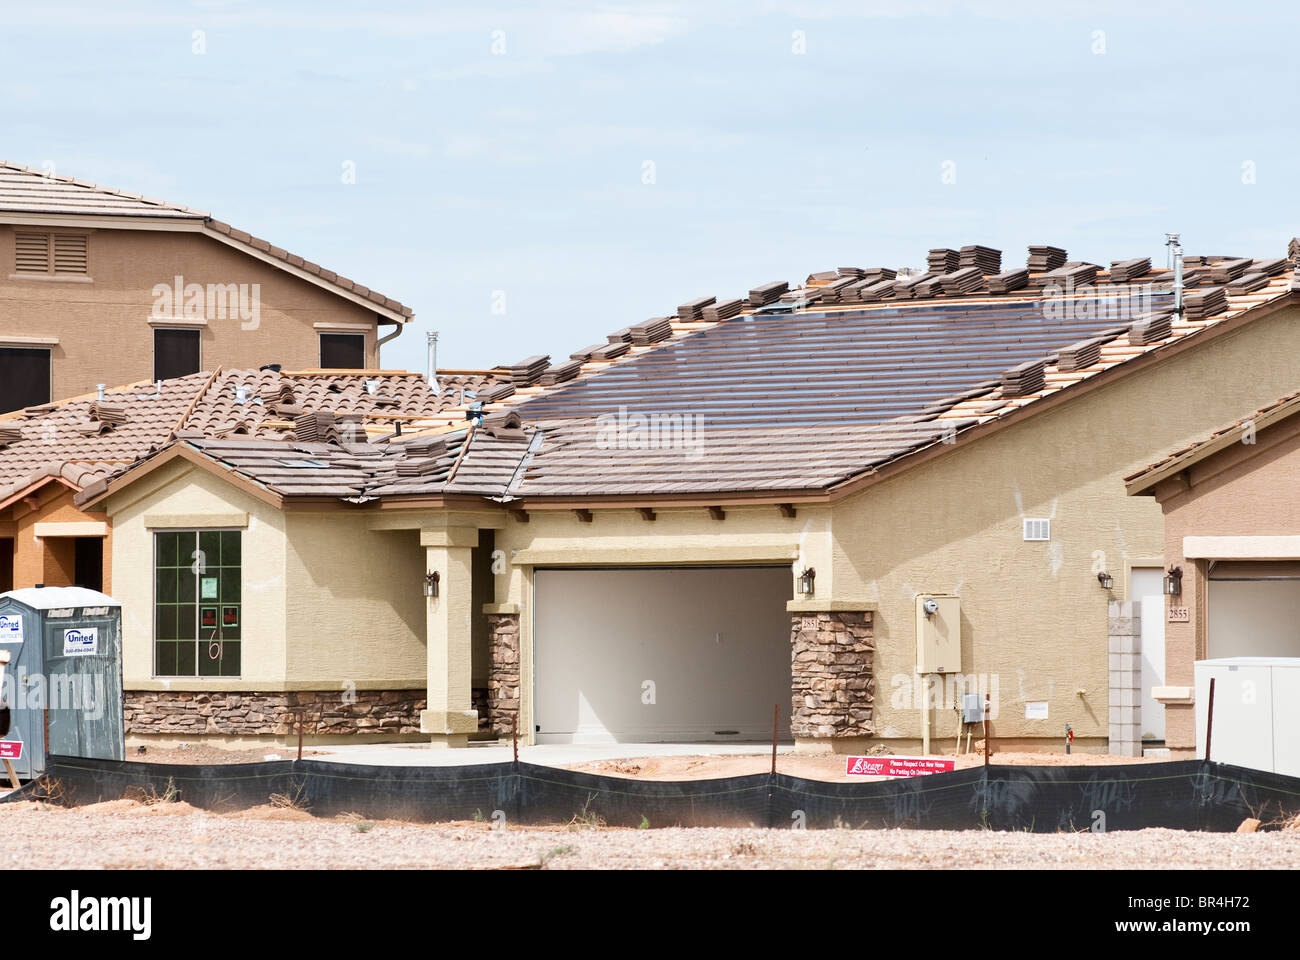 Integrierte solar Dachplatten werden in das Dach eines neuen Hauses im Bau in Arizona gebaut. Stockfoto